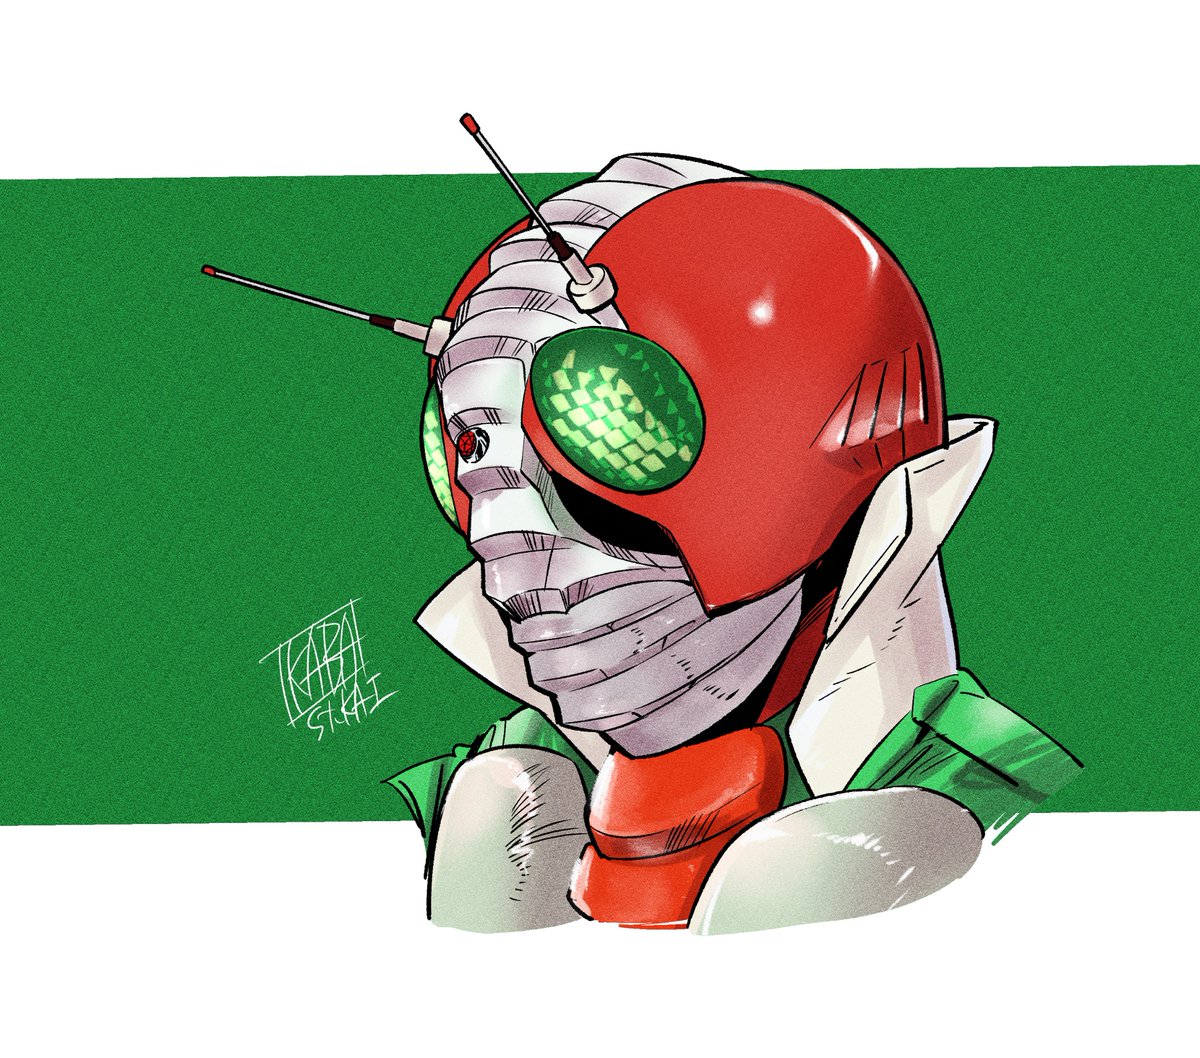 「仮面ライダーV3マスクの形状再確認。中央の蛇腹?と覗き穴の段差に色気を感じる。 」|🟢椛島洋介 Yosuke Kabashima🟣のイラスト